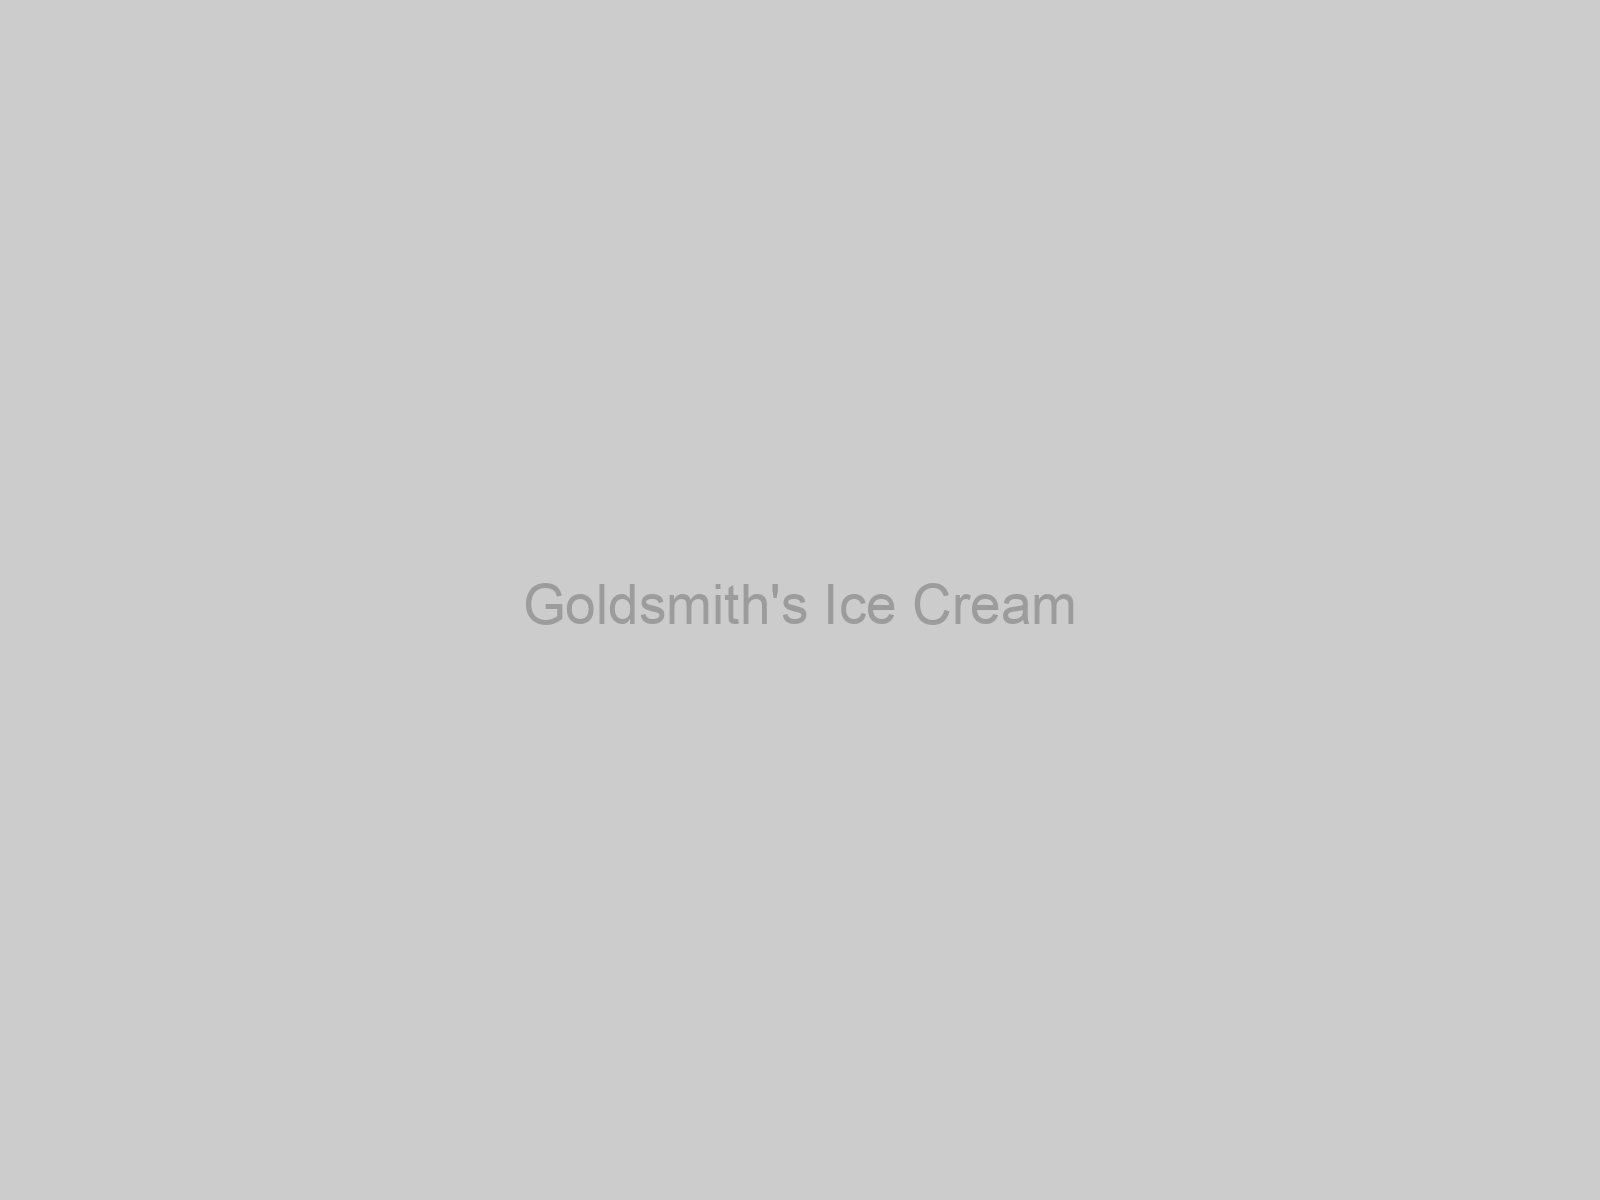 Goldsmith's Ice Cream